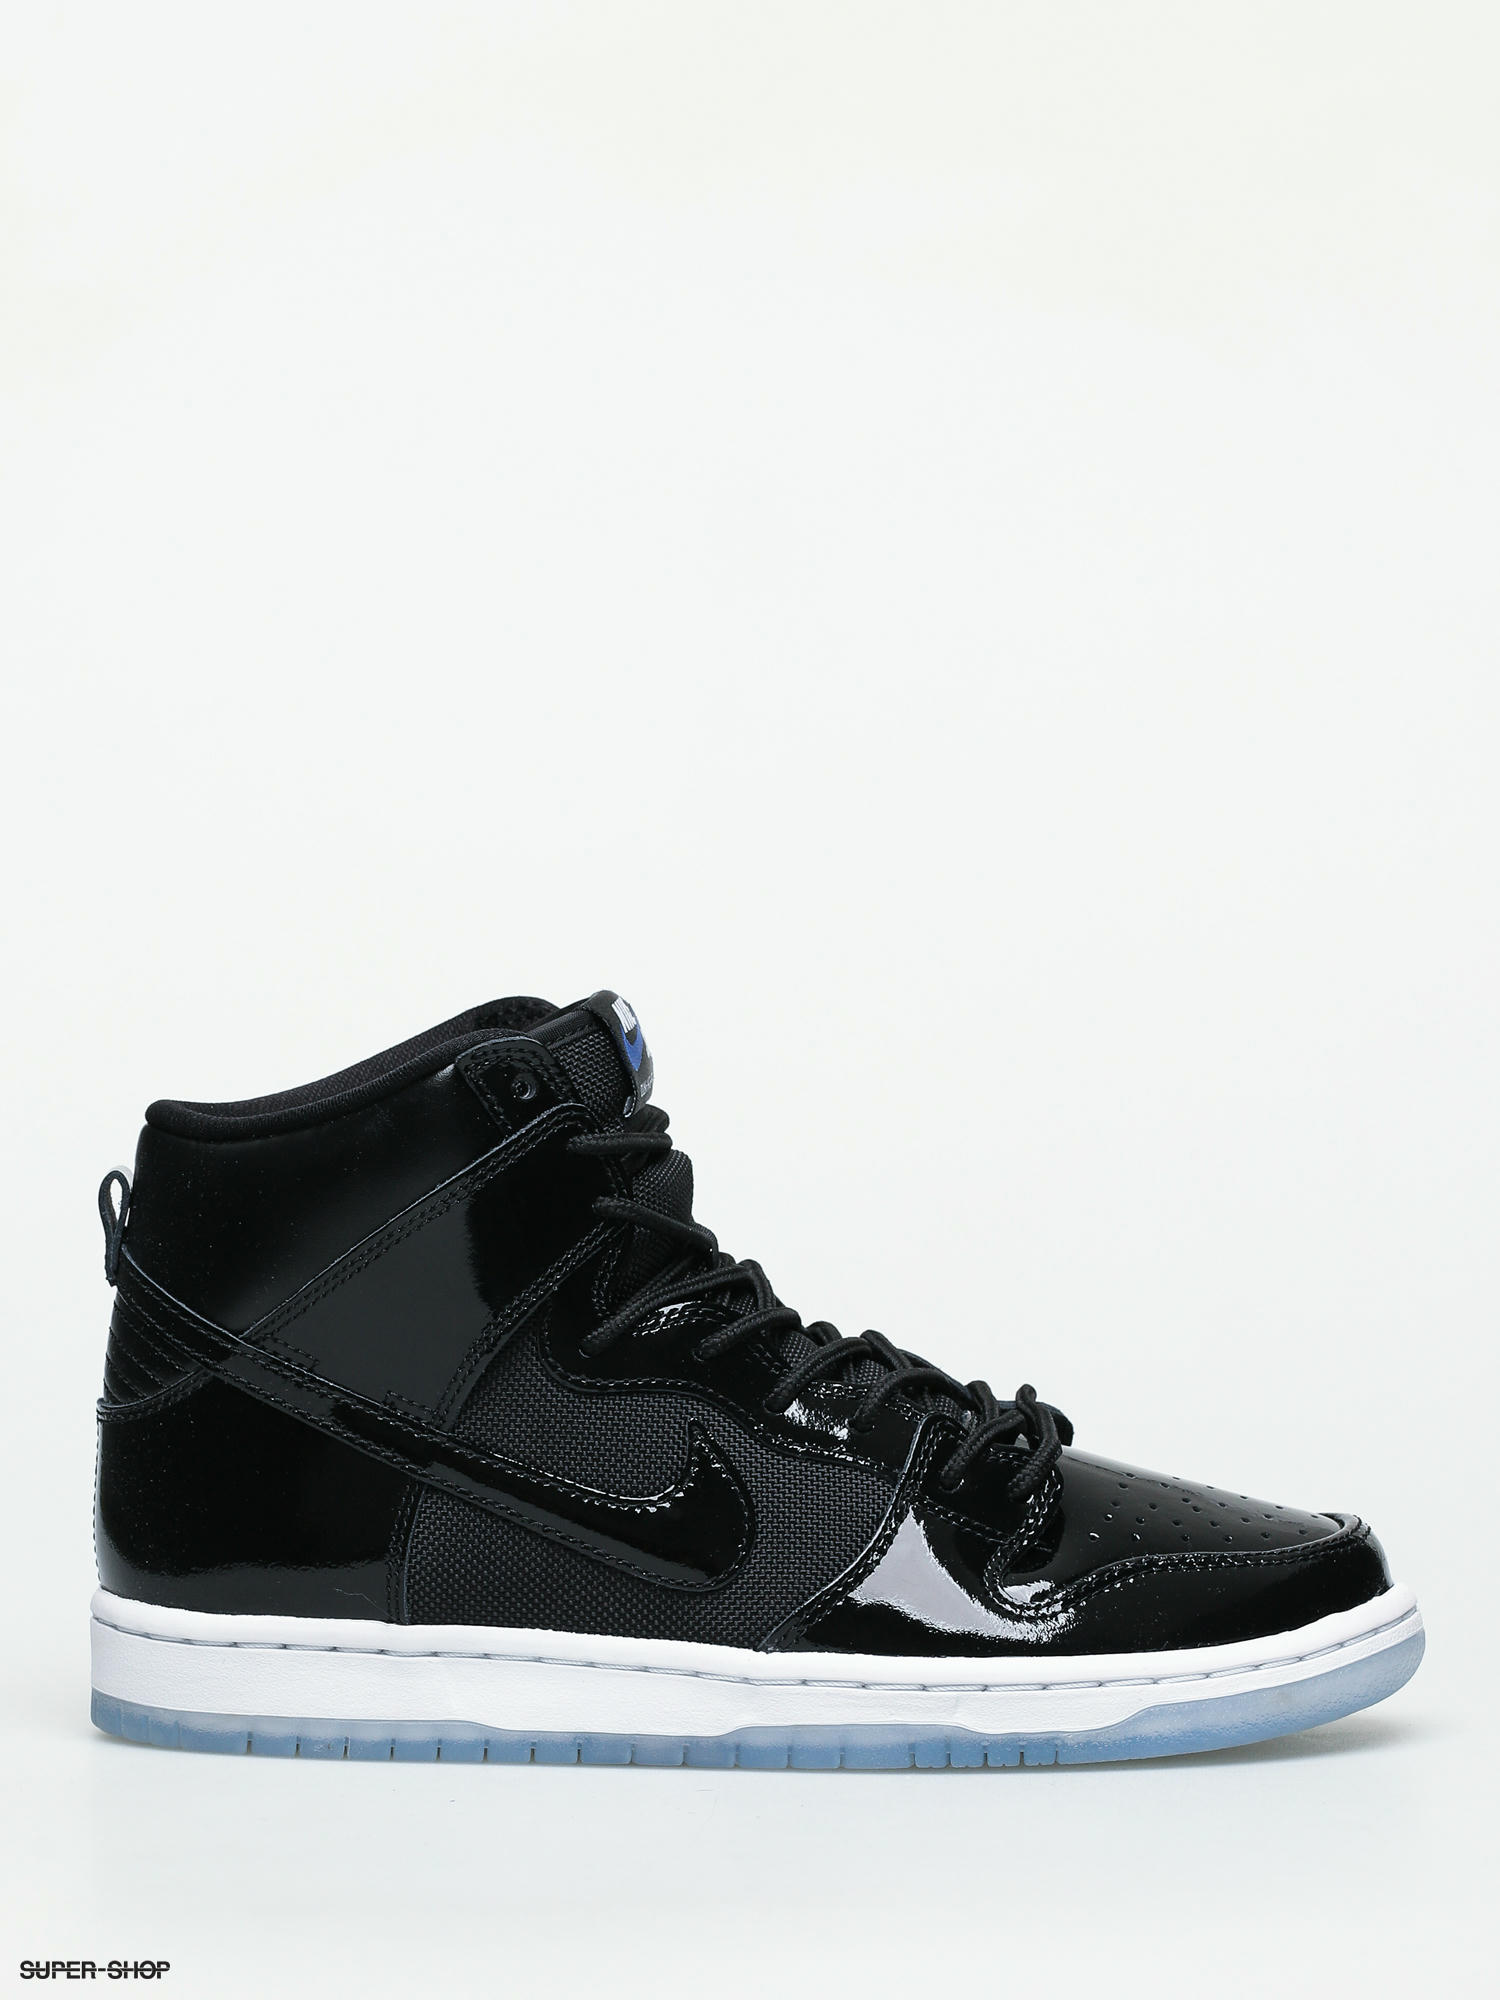 Nike SB Dunk High Pro Shoes (space jam black/black white varsity